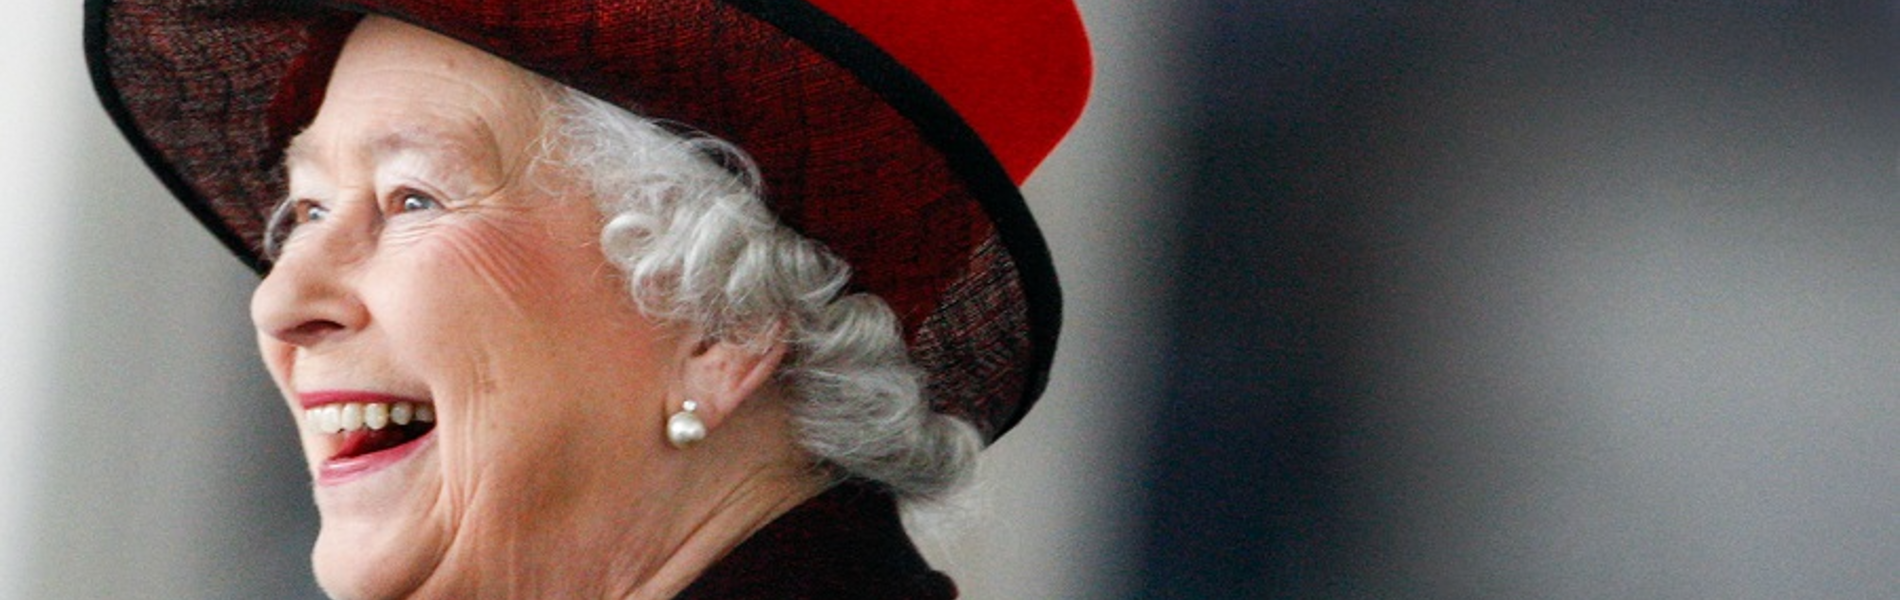 מנהיגה, לא קישוט: המלכה אליזבת' מציינת 70 שנה על הכס